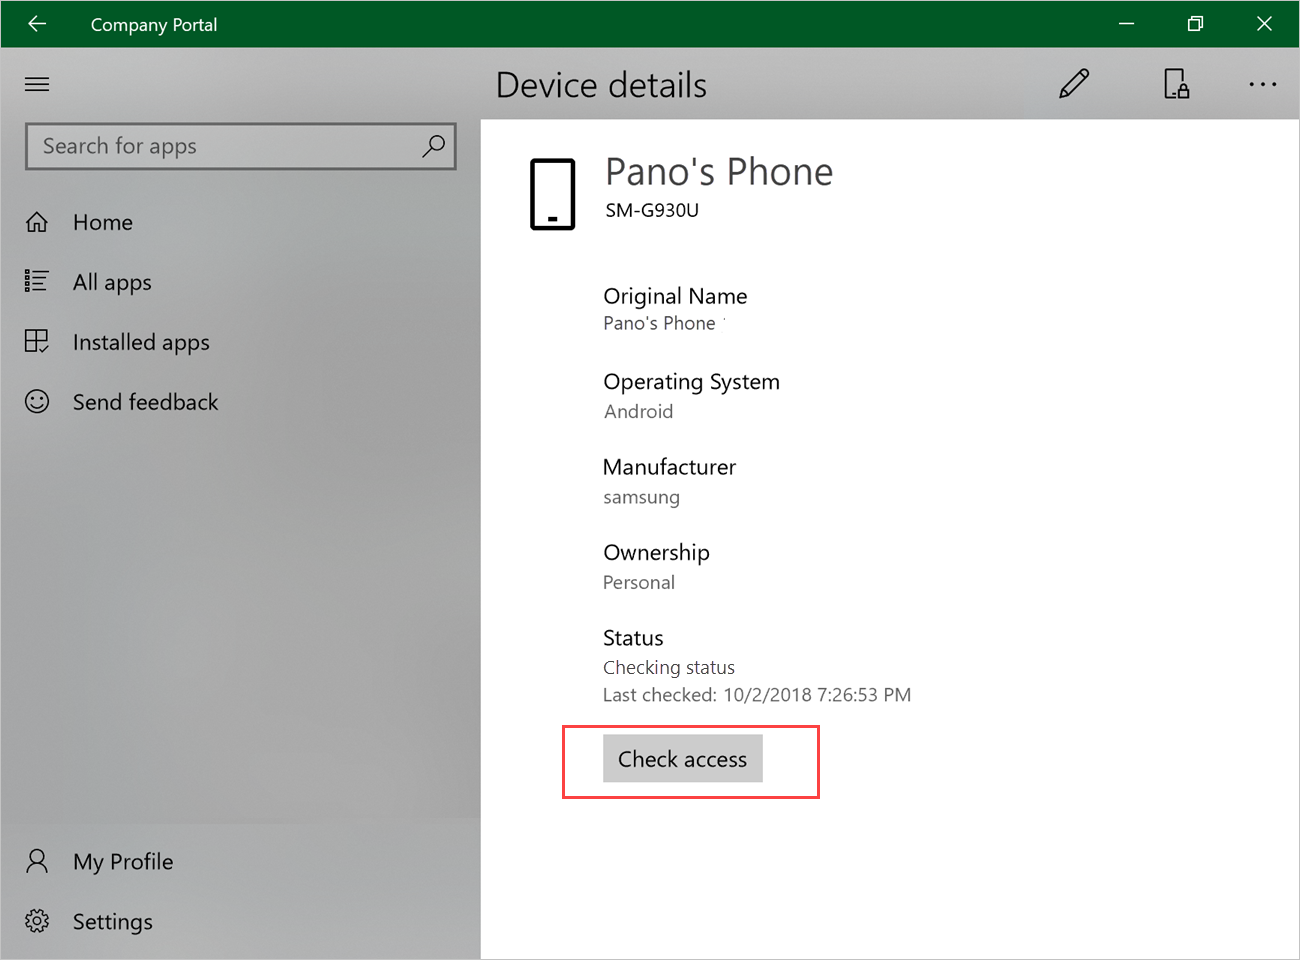 Captura de tela de exemplo do aplicativo Portal da Empresa para Windows, página Detalhes do dispositivo, destacando o botão Verificar Acesso.